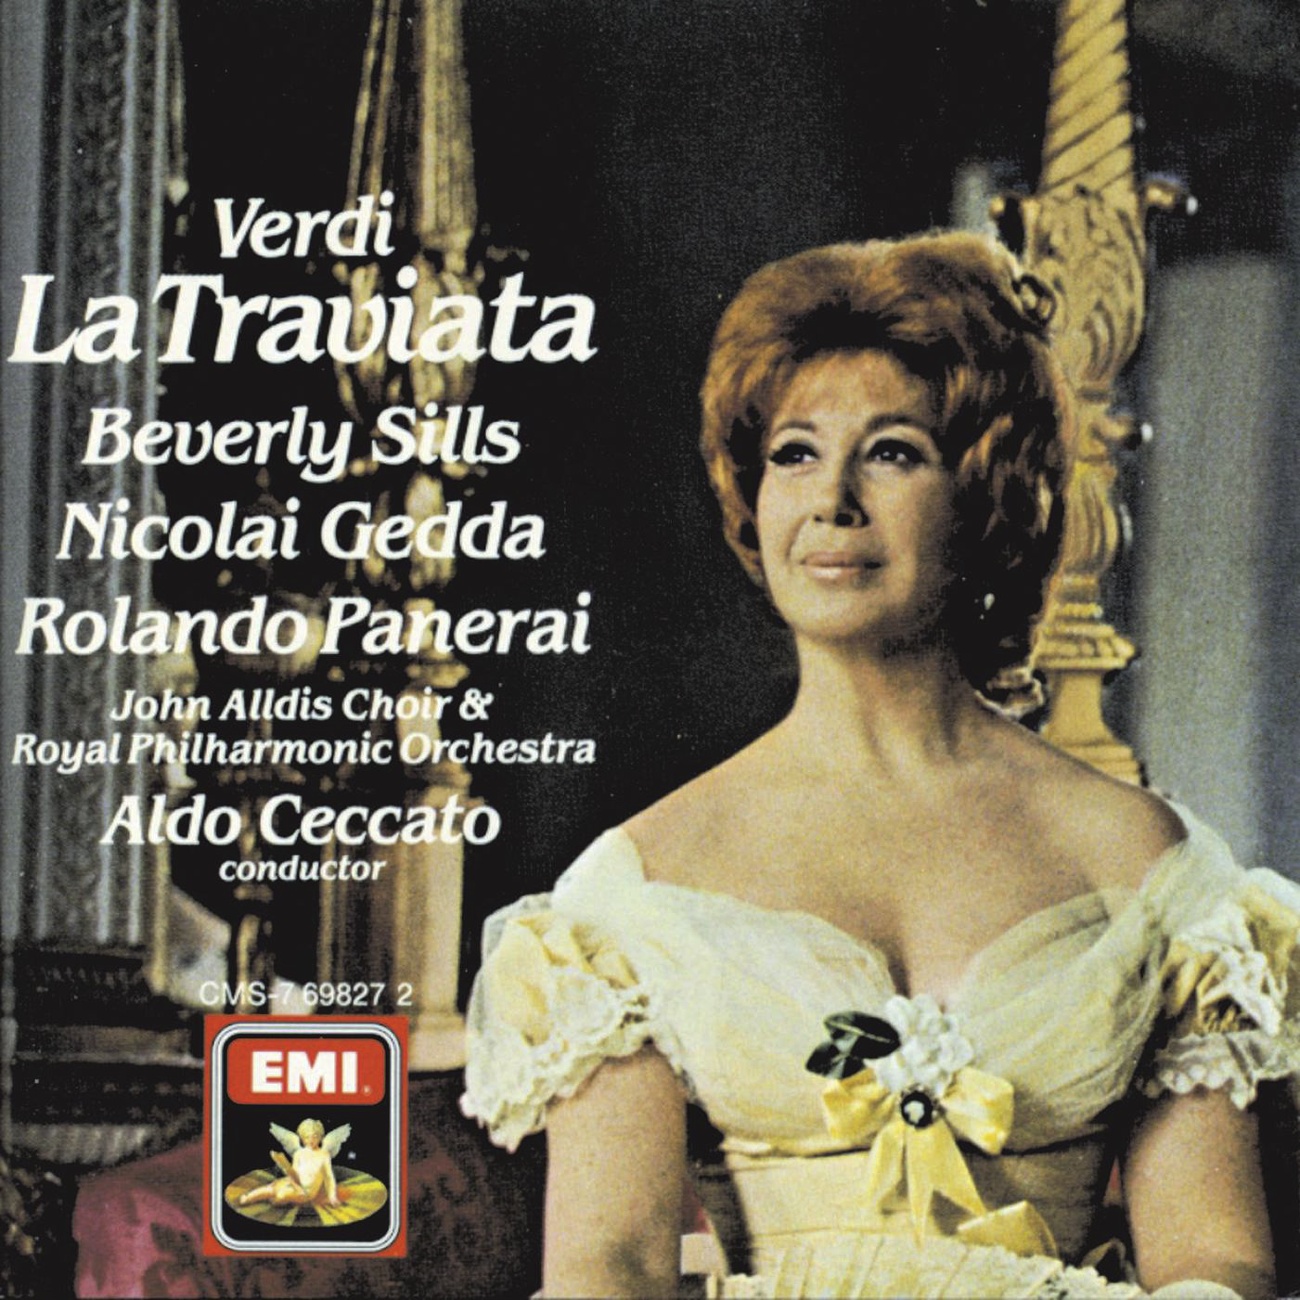 La Traviata 1988 Digital Remaster, Act II, Scene I: Un di, quando le veneri Germont Violetta